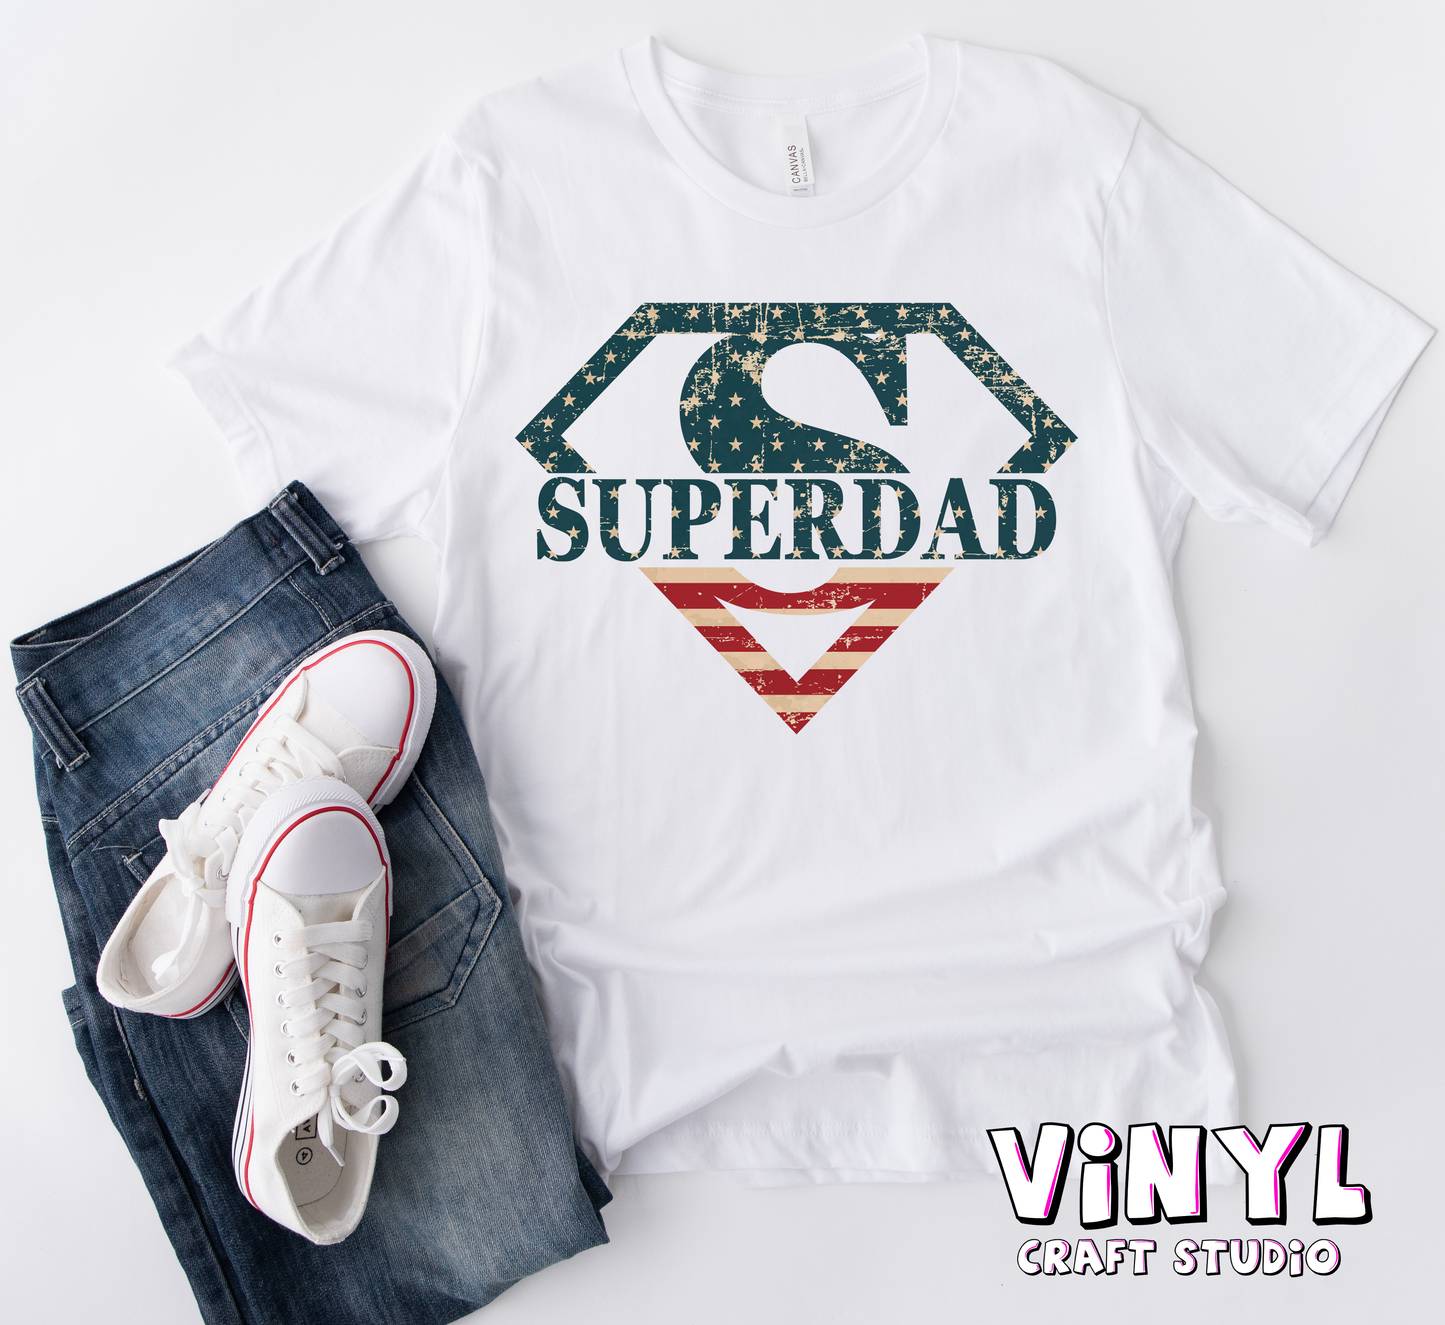 285.) Super Dad